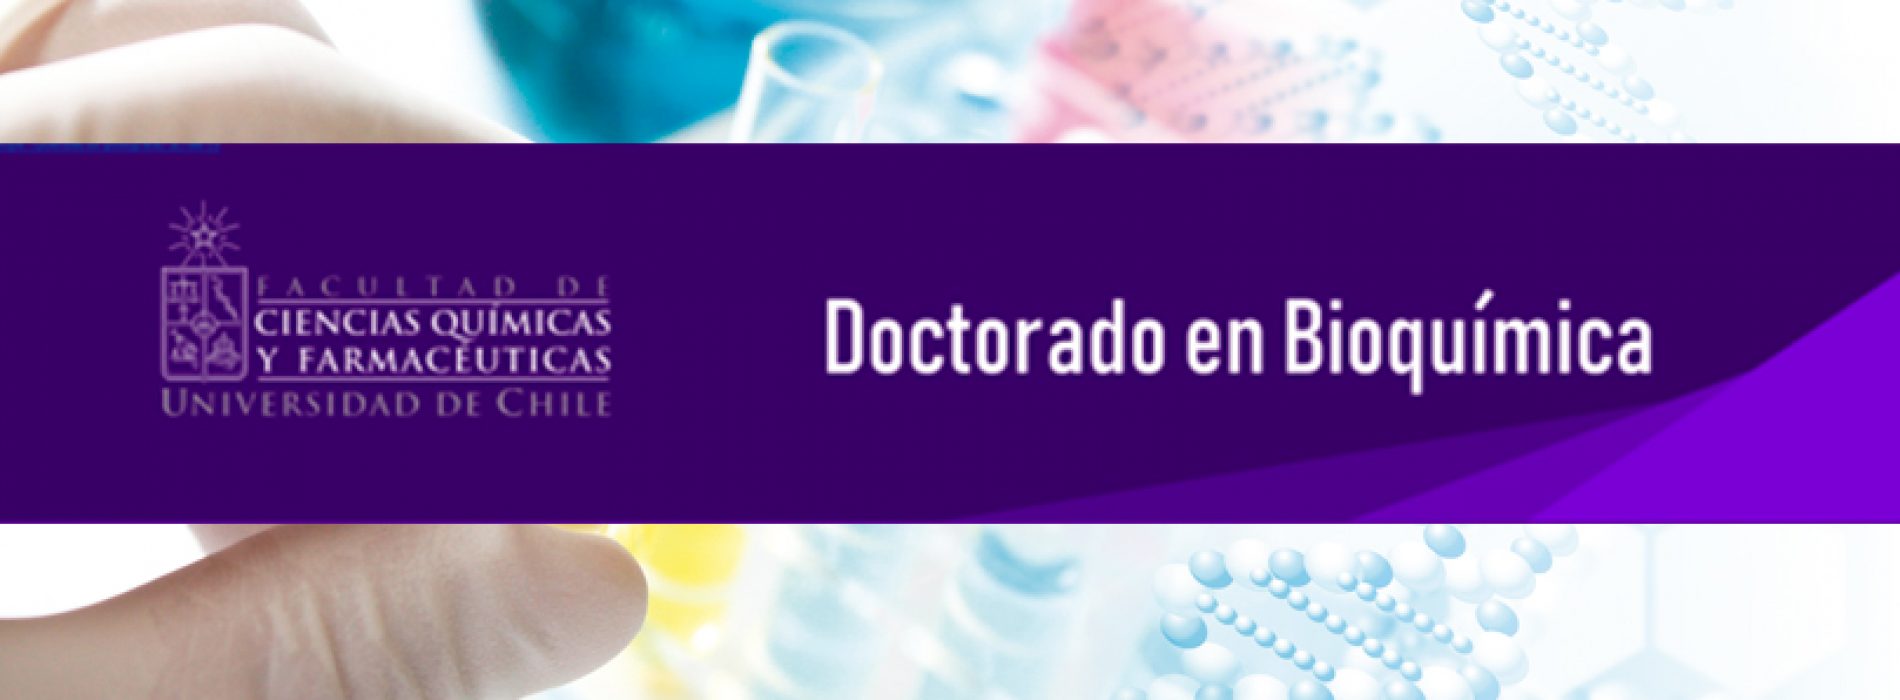 Doctorado en Bioquímica – Universidad de Chile